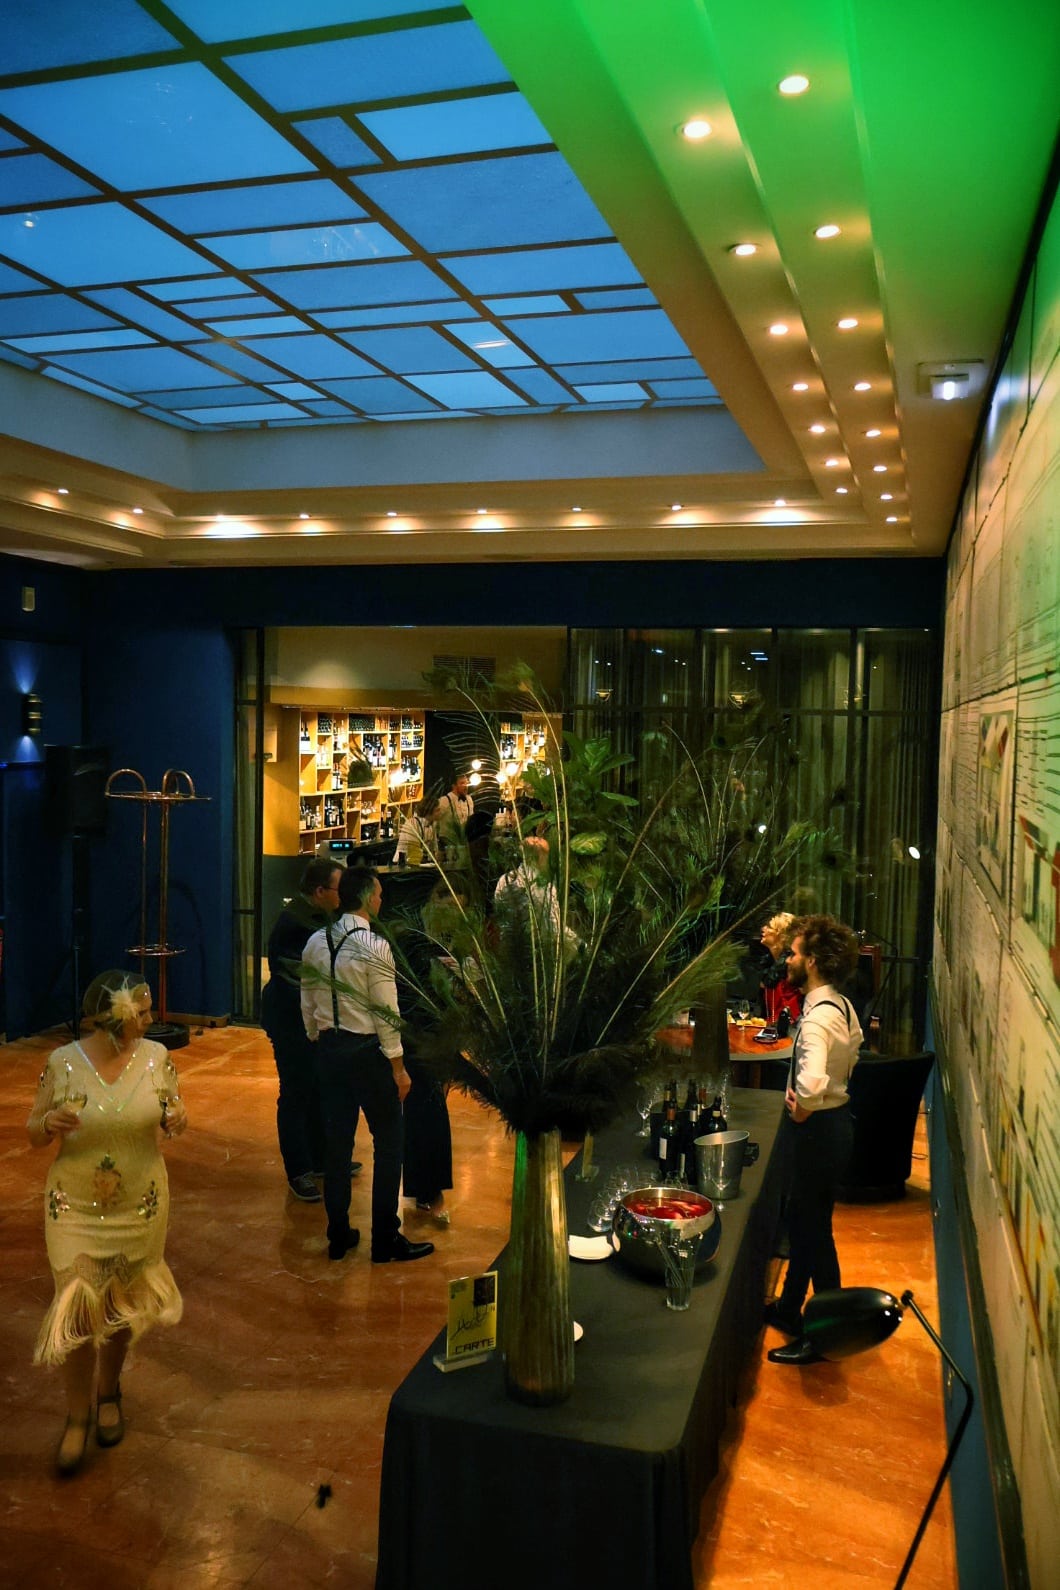 Soirée Gatsby Casino à l'hôtel Hannong de Strasbourg